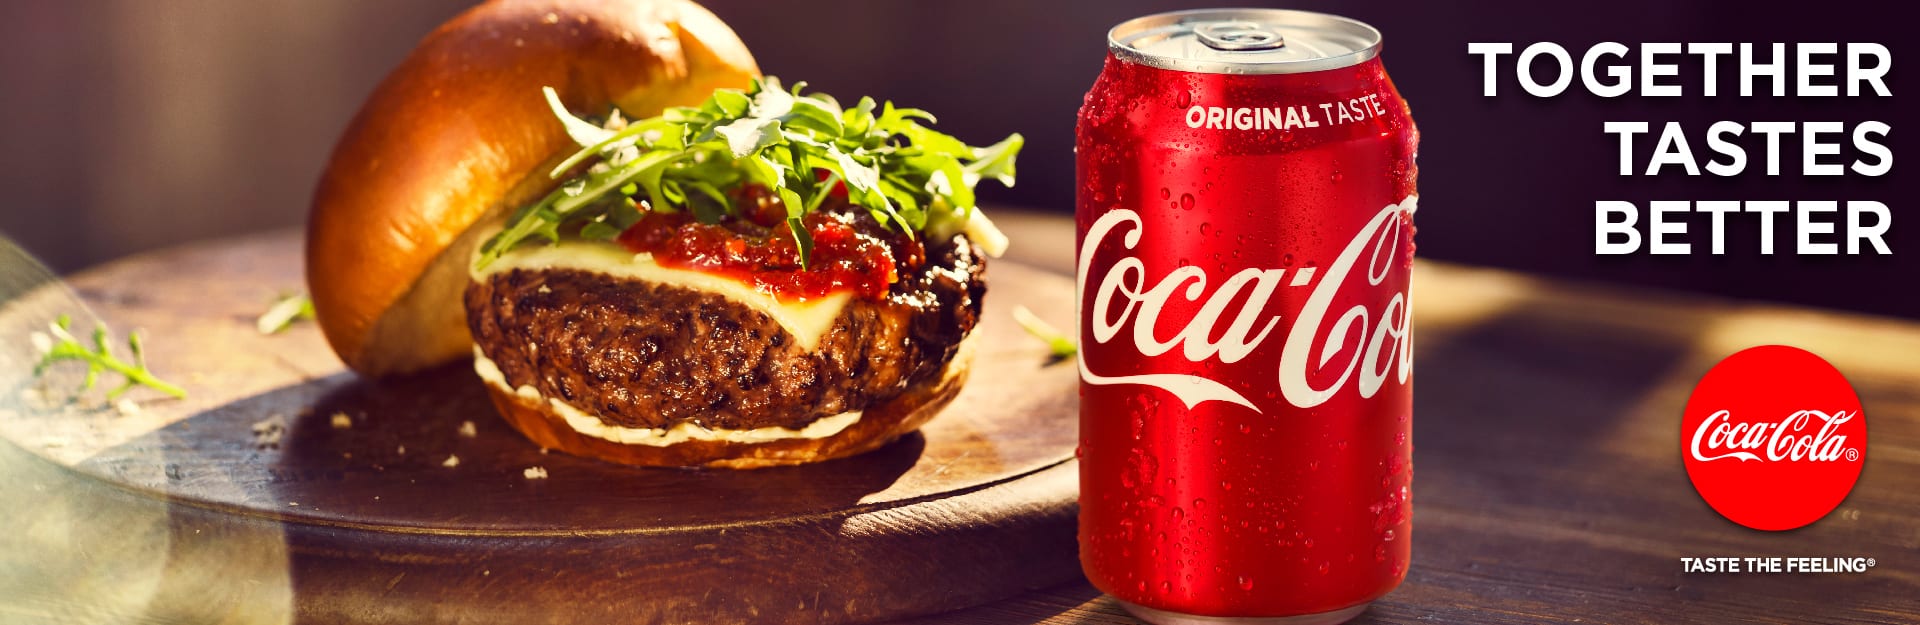  Nuova campagna globale di Coca-Cola, “Together Tastes Better”